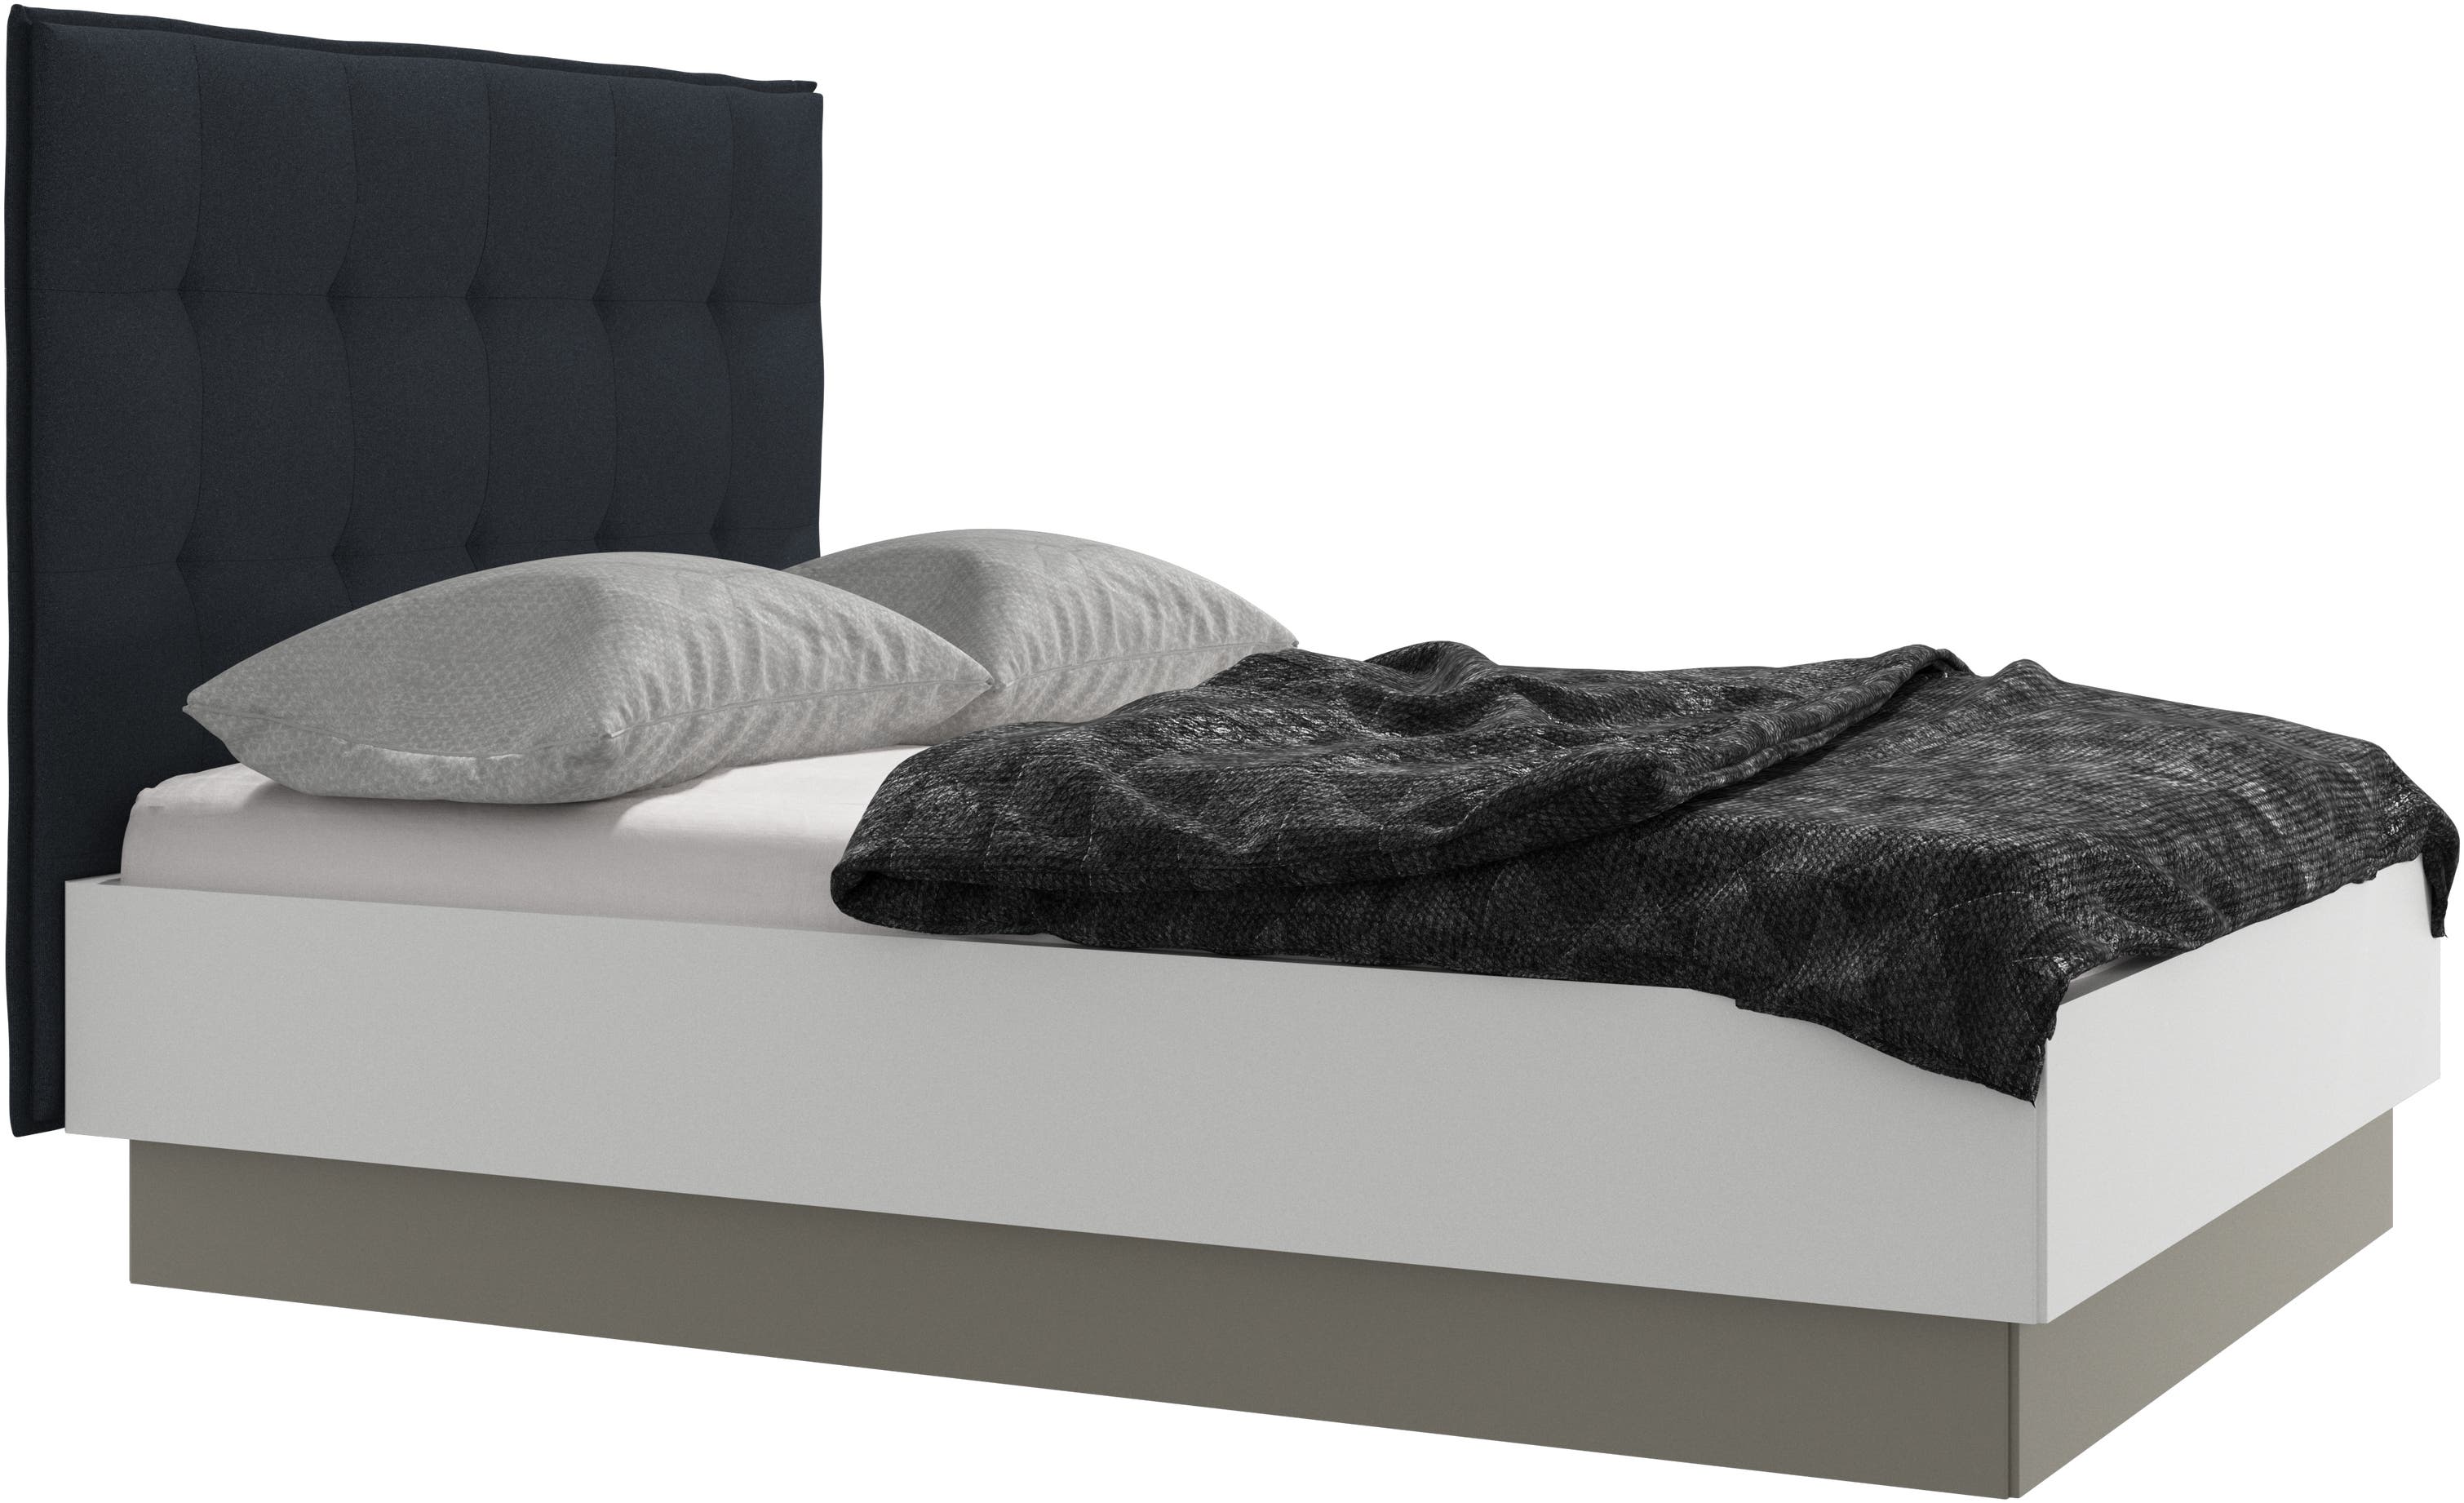 Lugano oppbevaringsseng med løftbar sengebunn, ekskl. madrass.